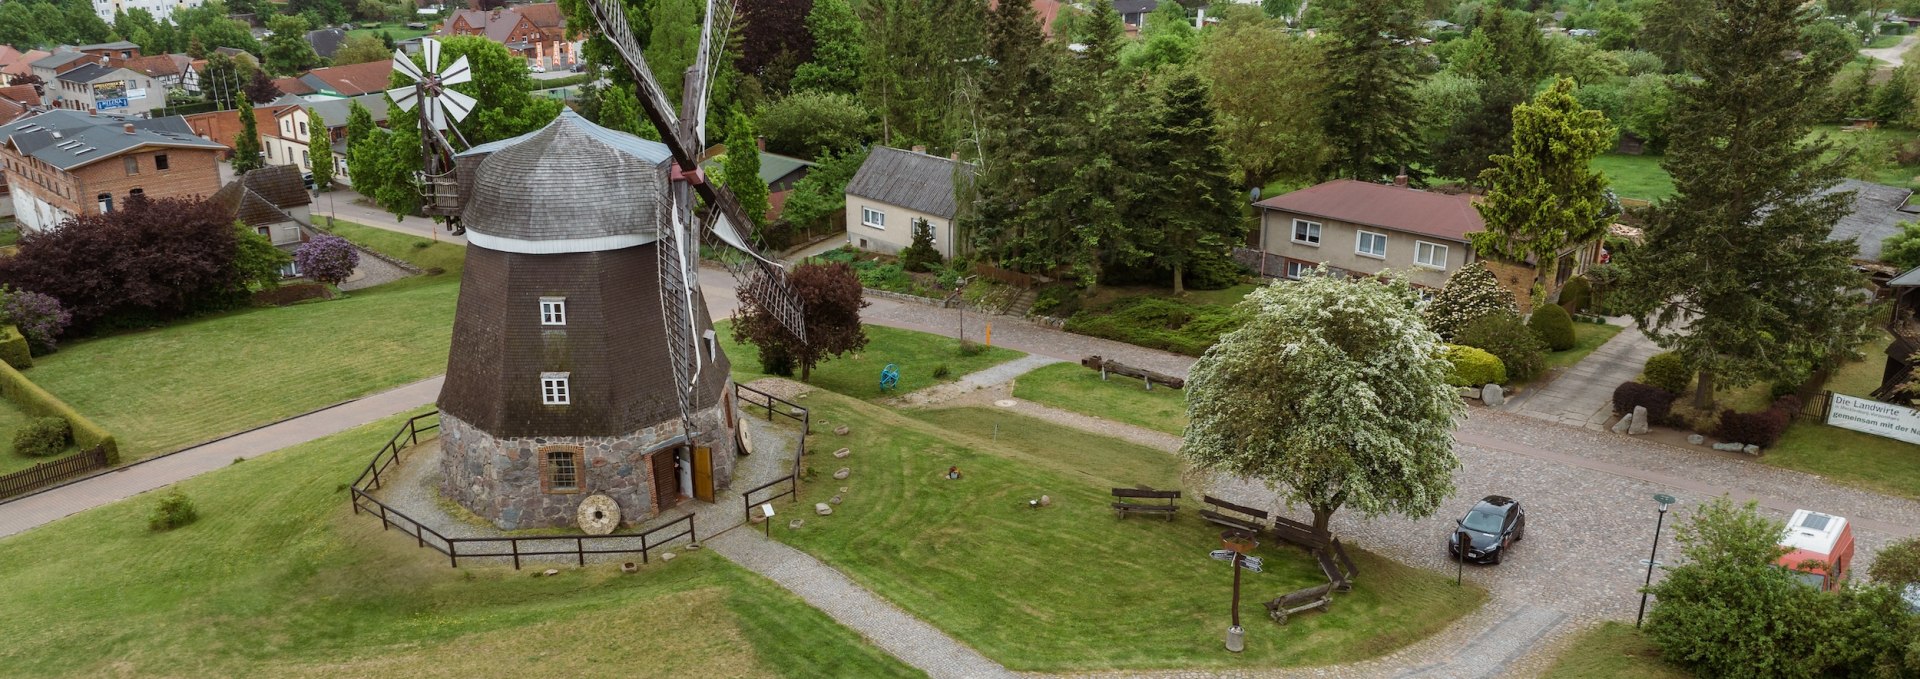 Die Mühlenstadt Woldegk weist noch heute stolze vier Mühlen vor. In der schiefernden Holländermühle aus dem 18. Jahrhundert kann man Mühlenwart Toralf Pfeiffer einen Besuch im Mühlenmuseum abstatten., © TMV/Gross